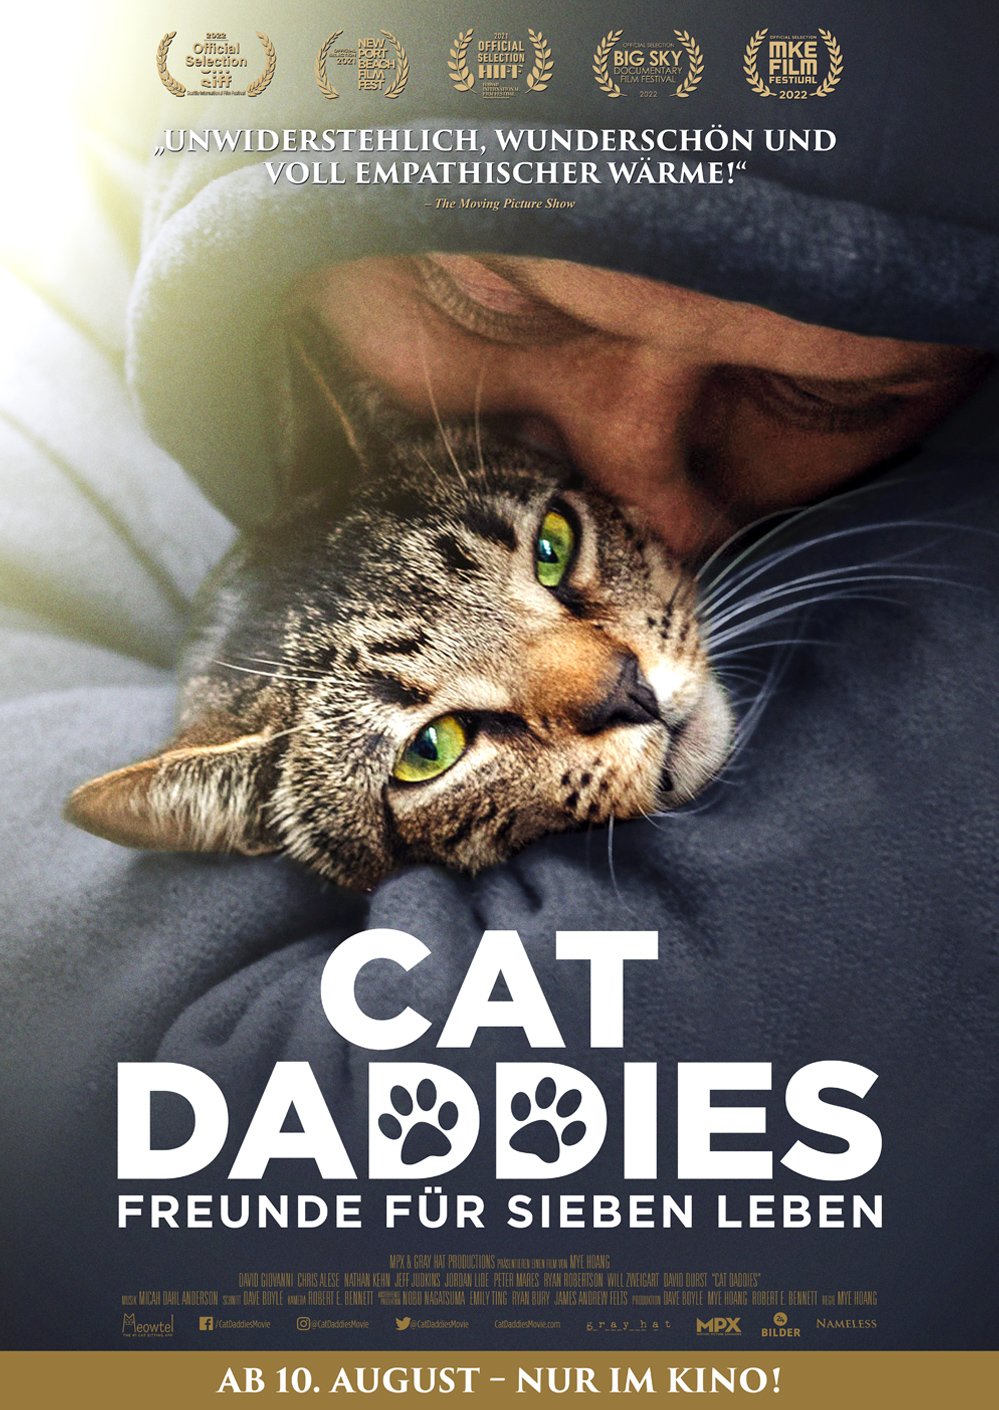 Cat Daddies Freunde für sieben Leben Dokumentarfilm 2021